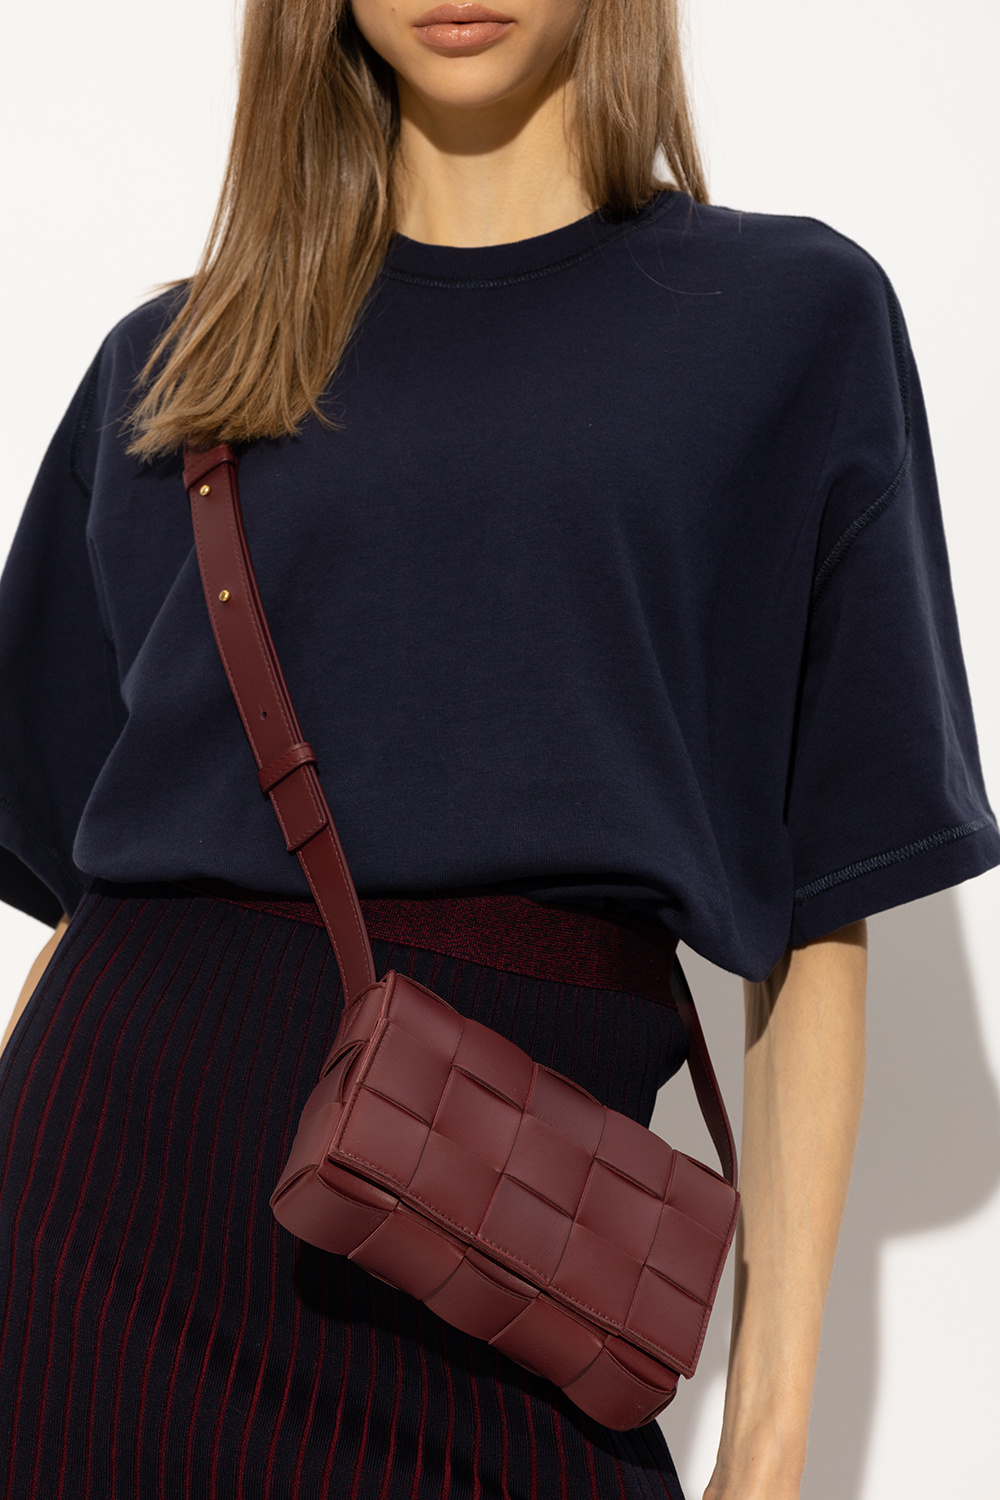 Bottega Veneta 'Loop Small' shoulder bag, bottega veneta platform mules, Women's Bags